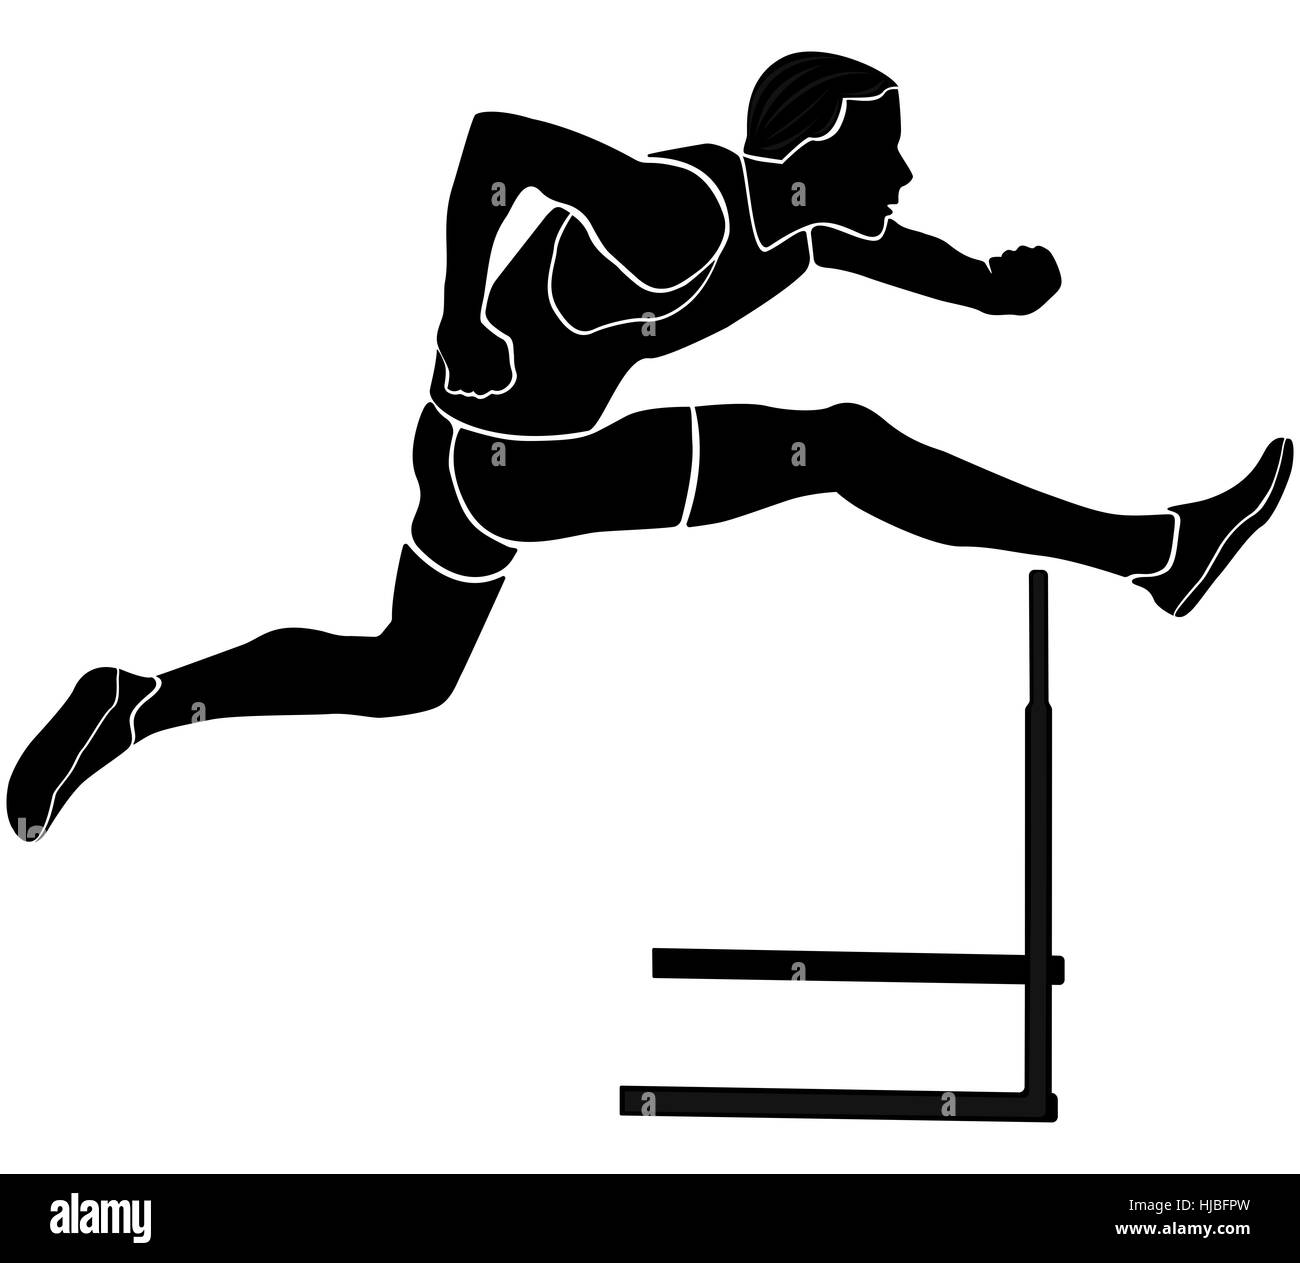 runner athlete running hurdles black silhouette vector illustration Stock Photo